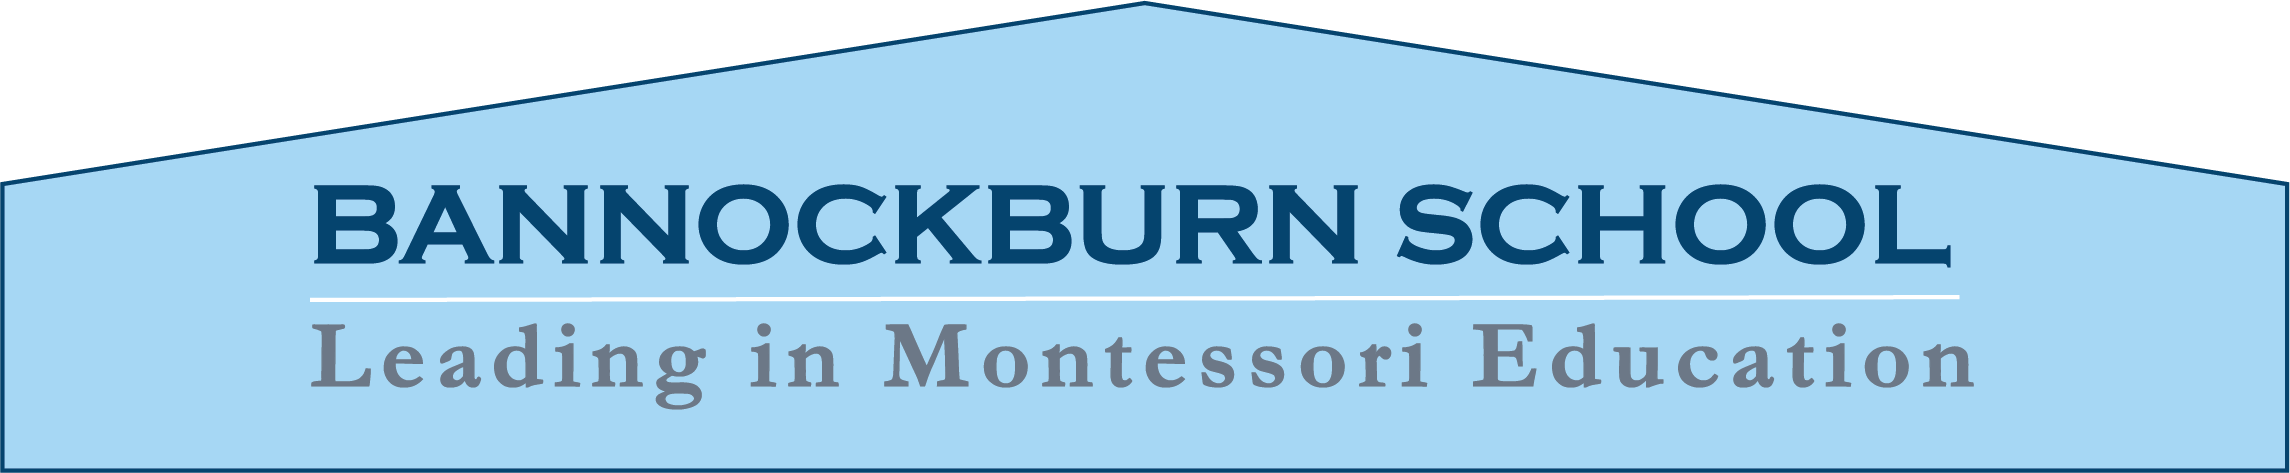 Bannockburn School Logo